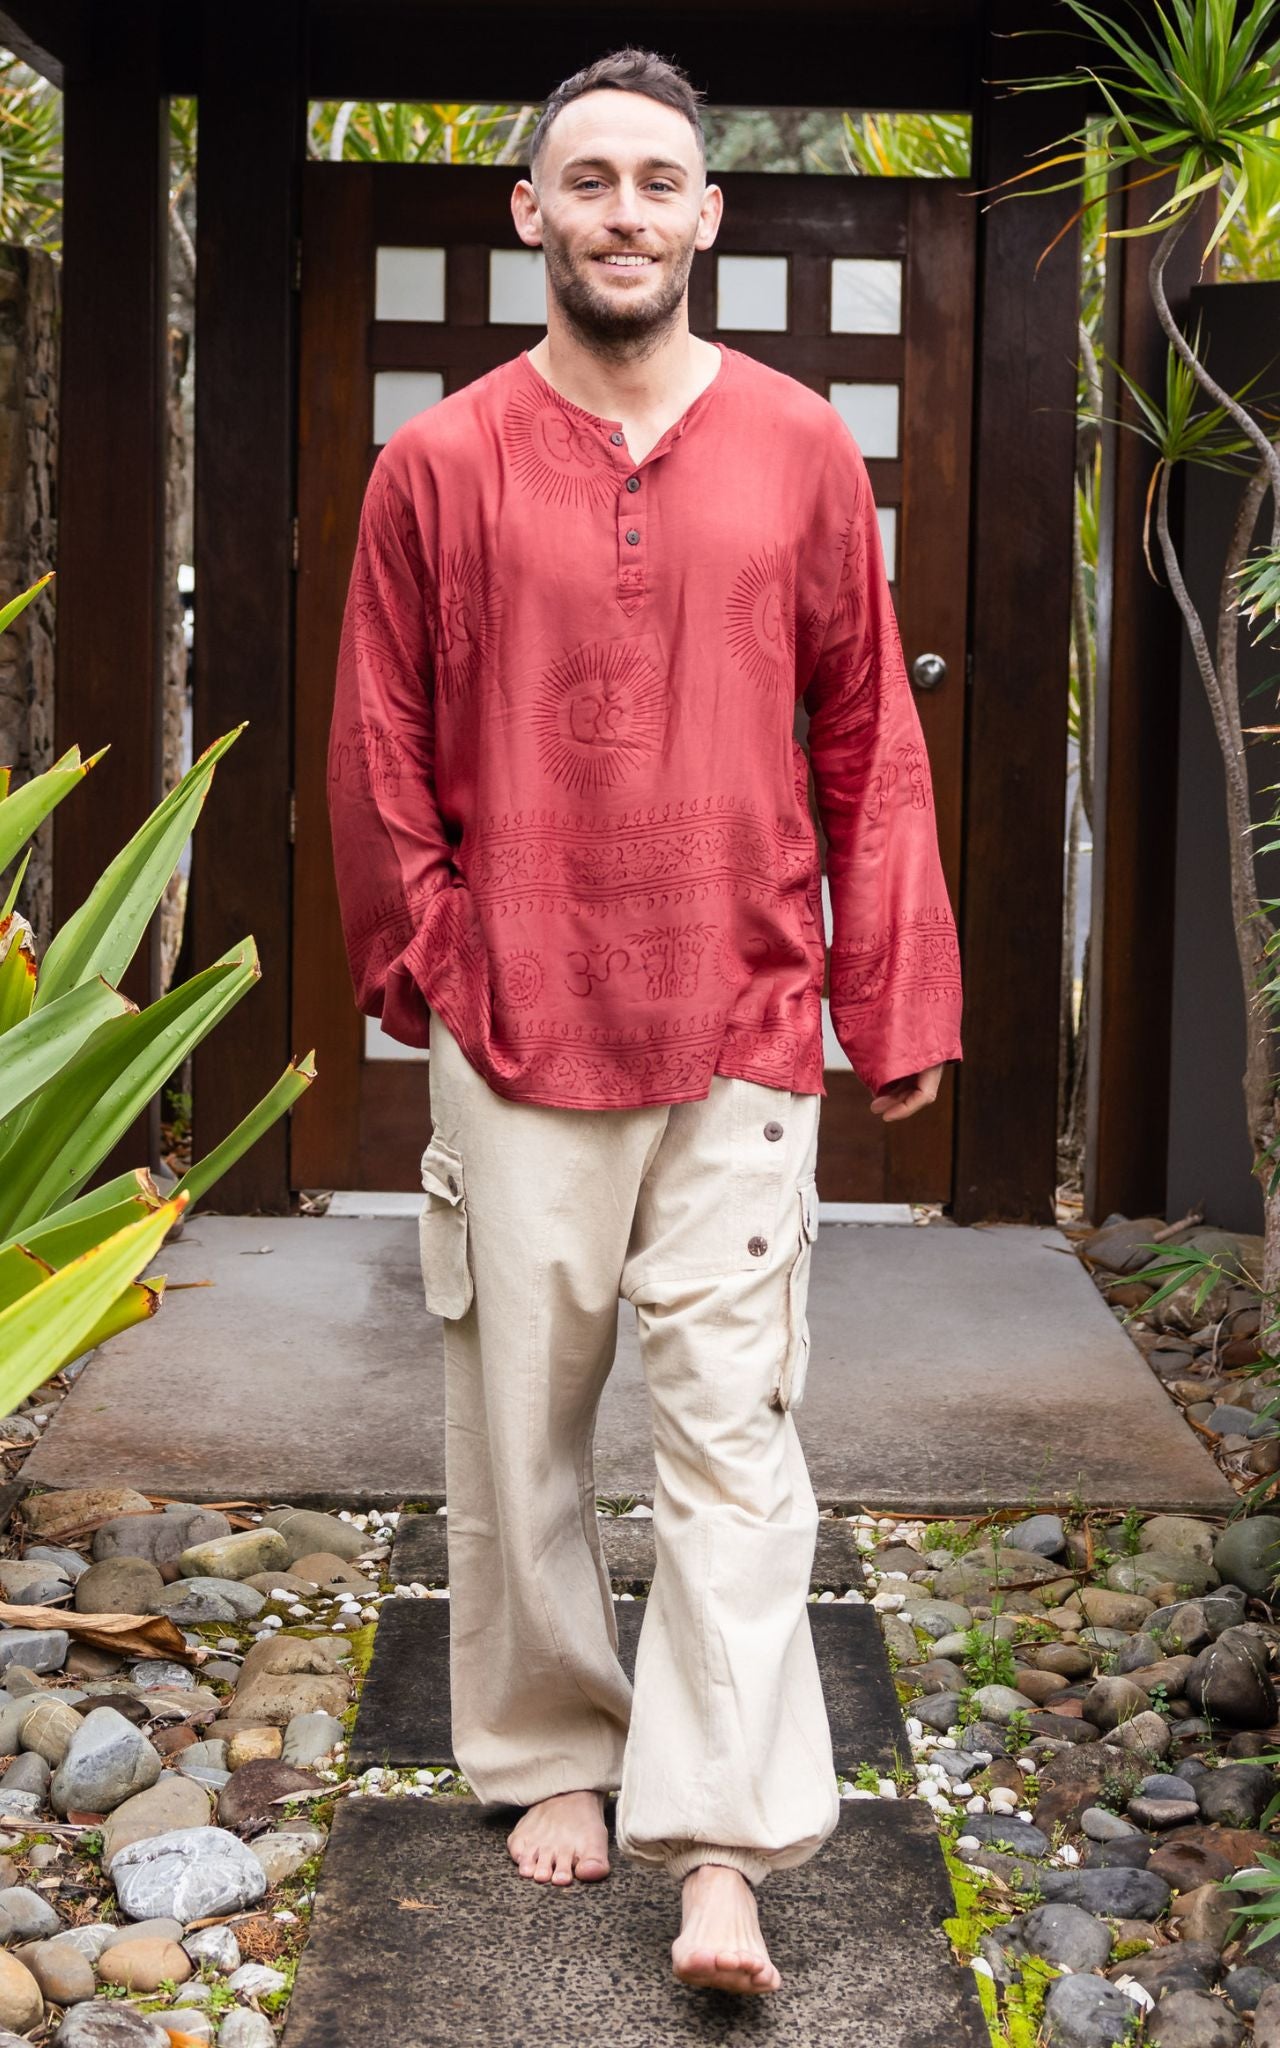 Nepal fisherman shirt, goa hippie shirt, yoga shirt, casual shirt - beige